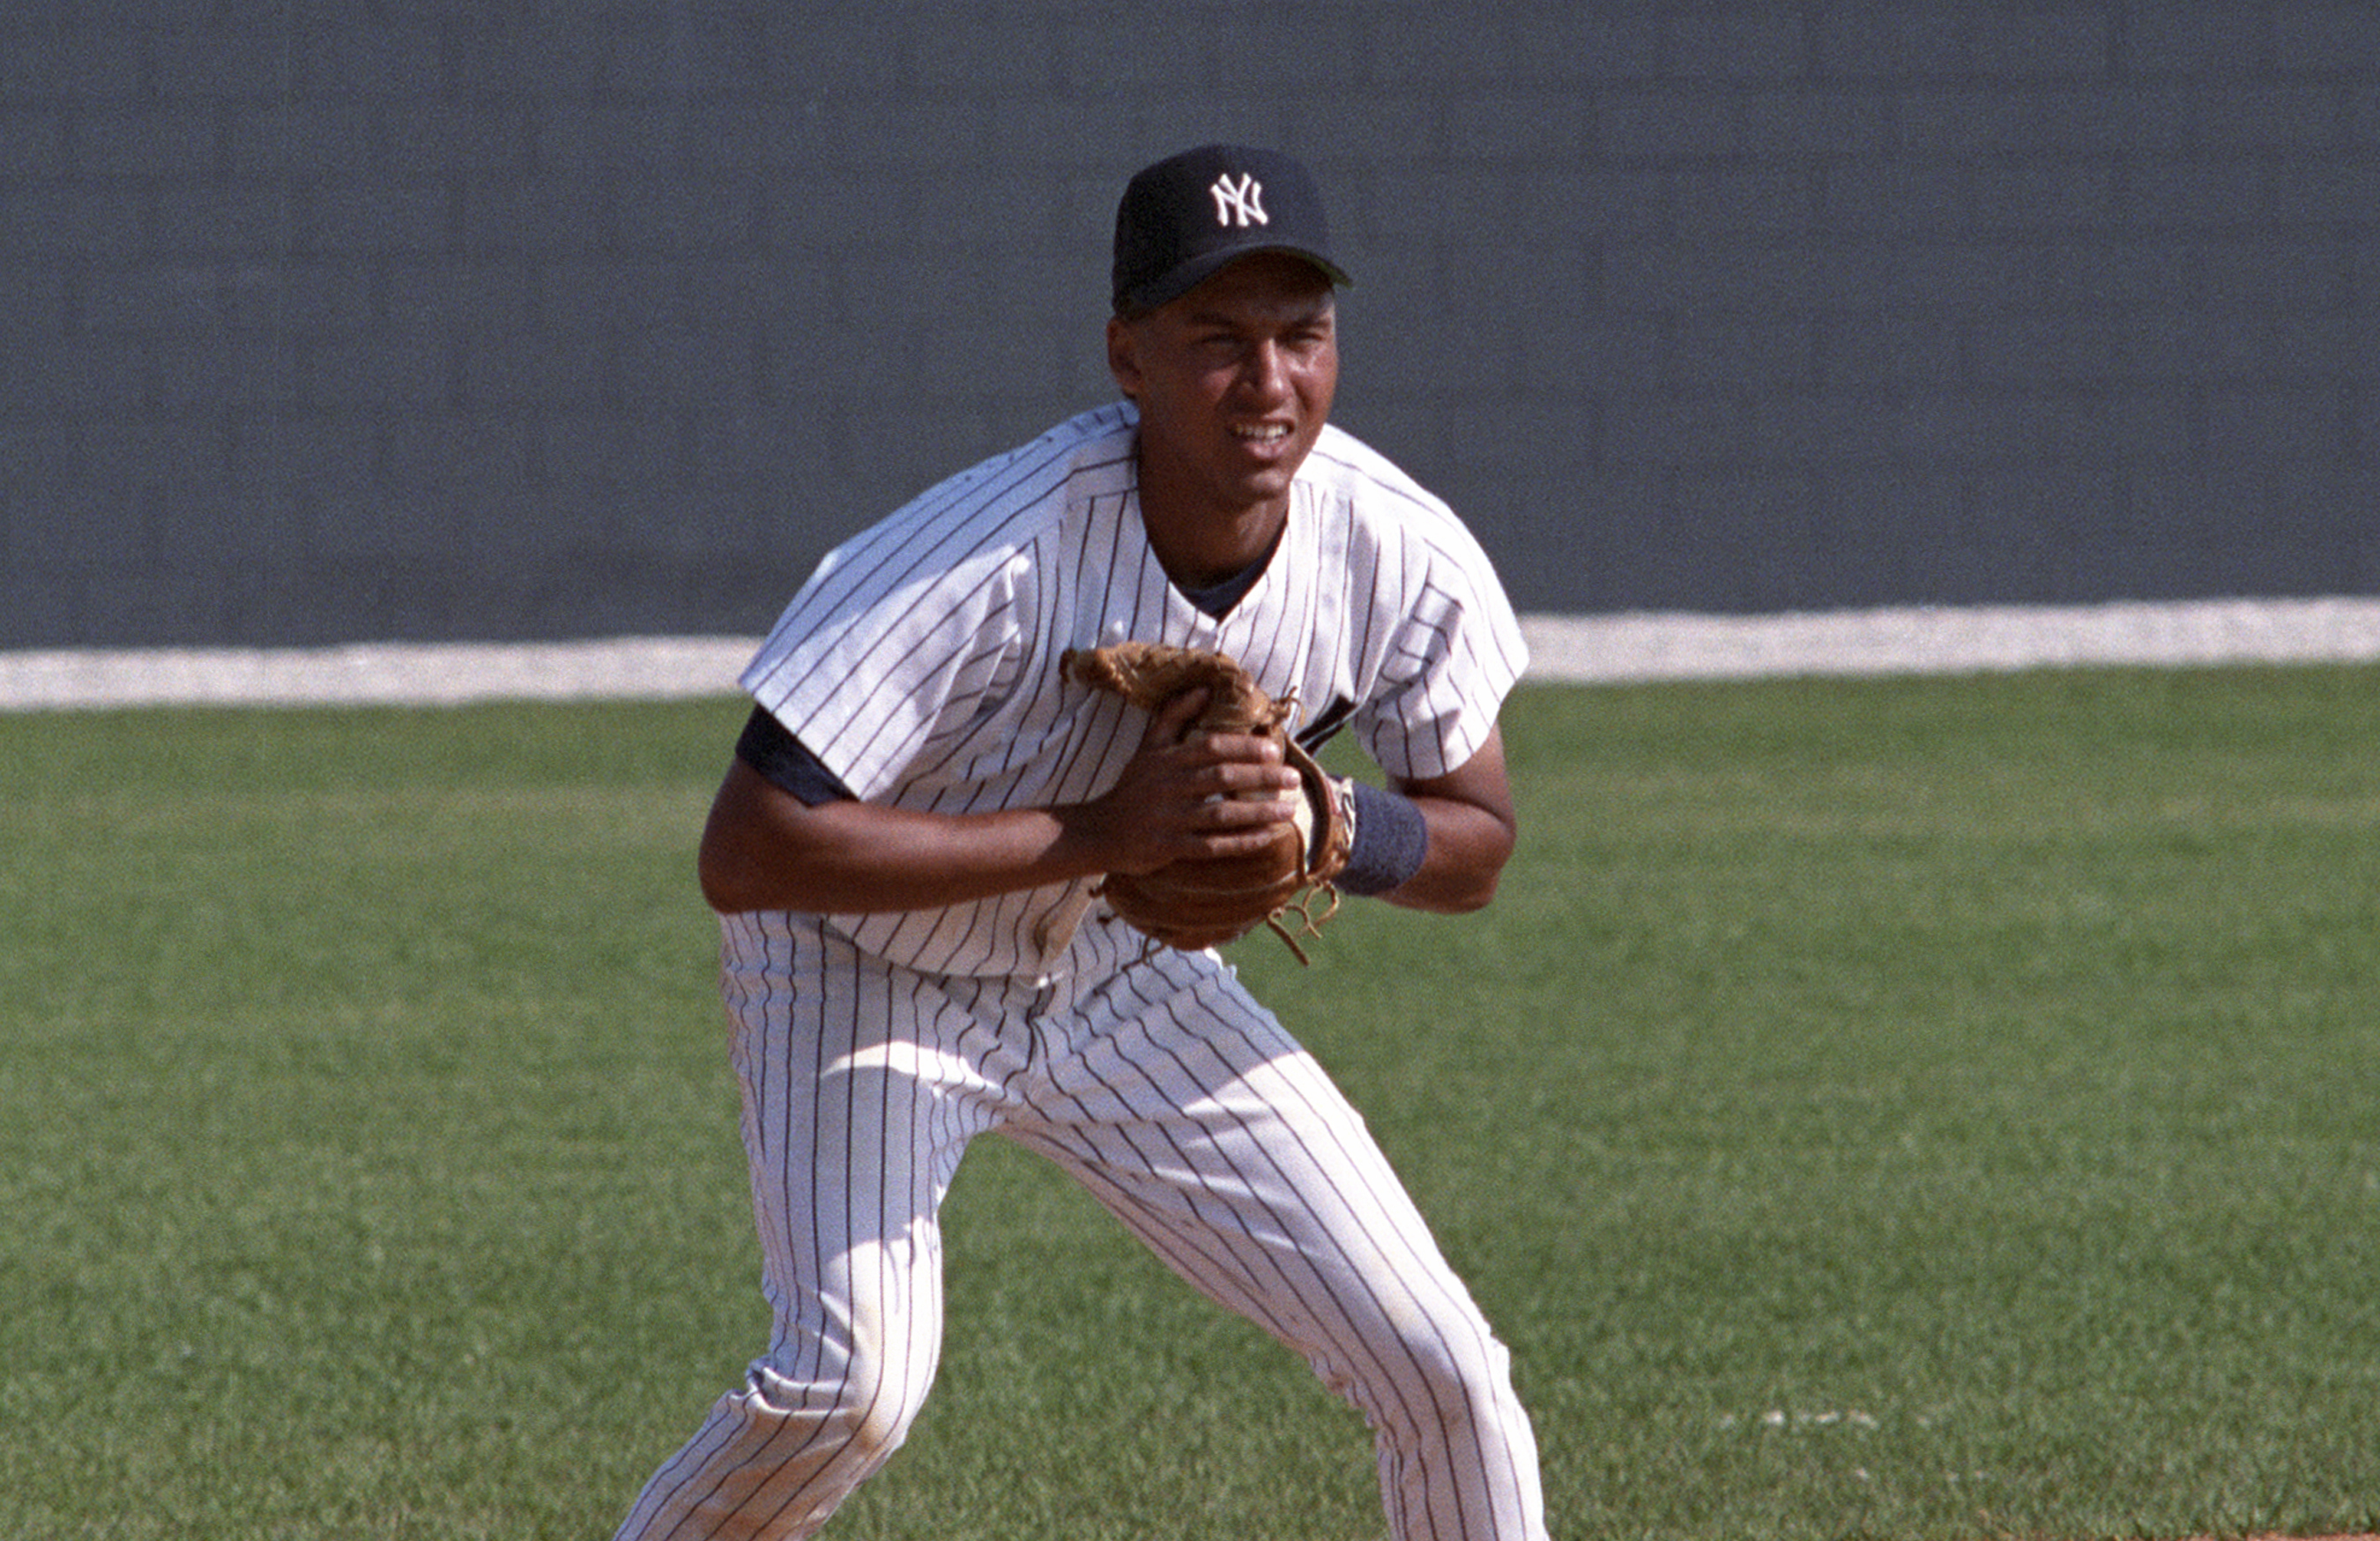  1987 Topps #340 Roger Clemens Red Sox MLB Baseball